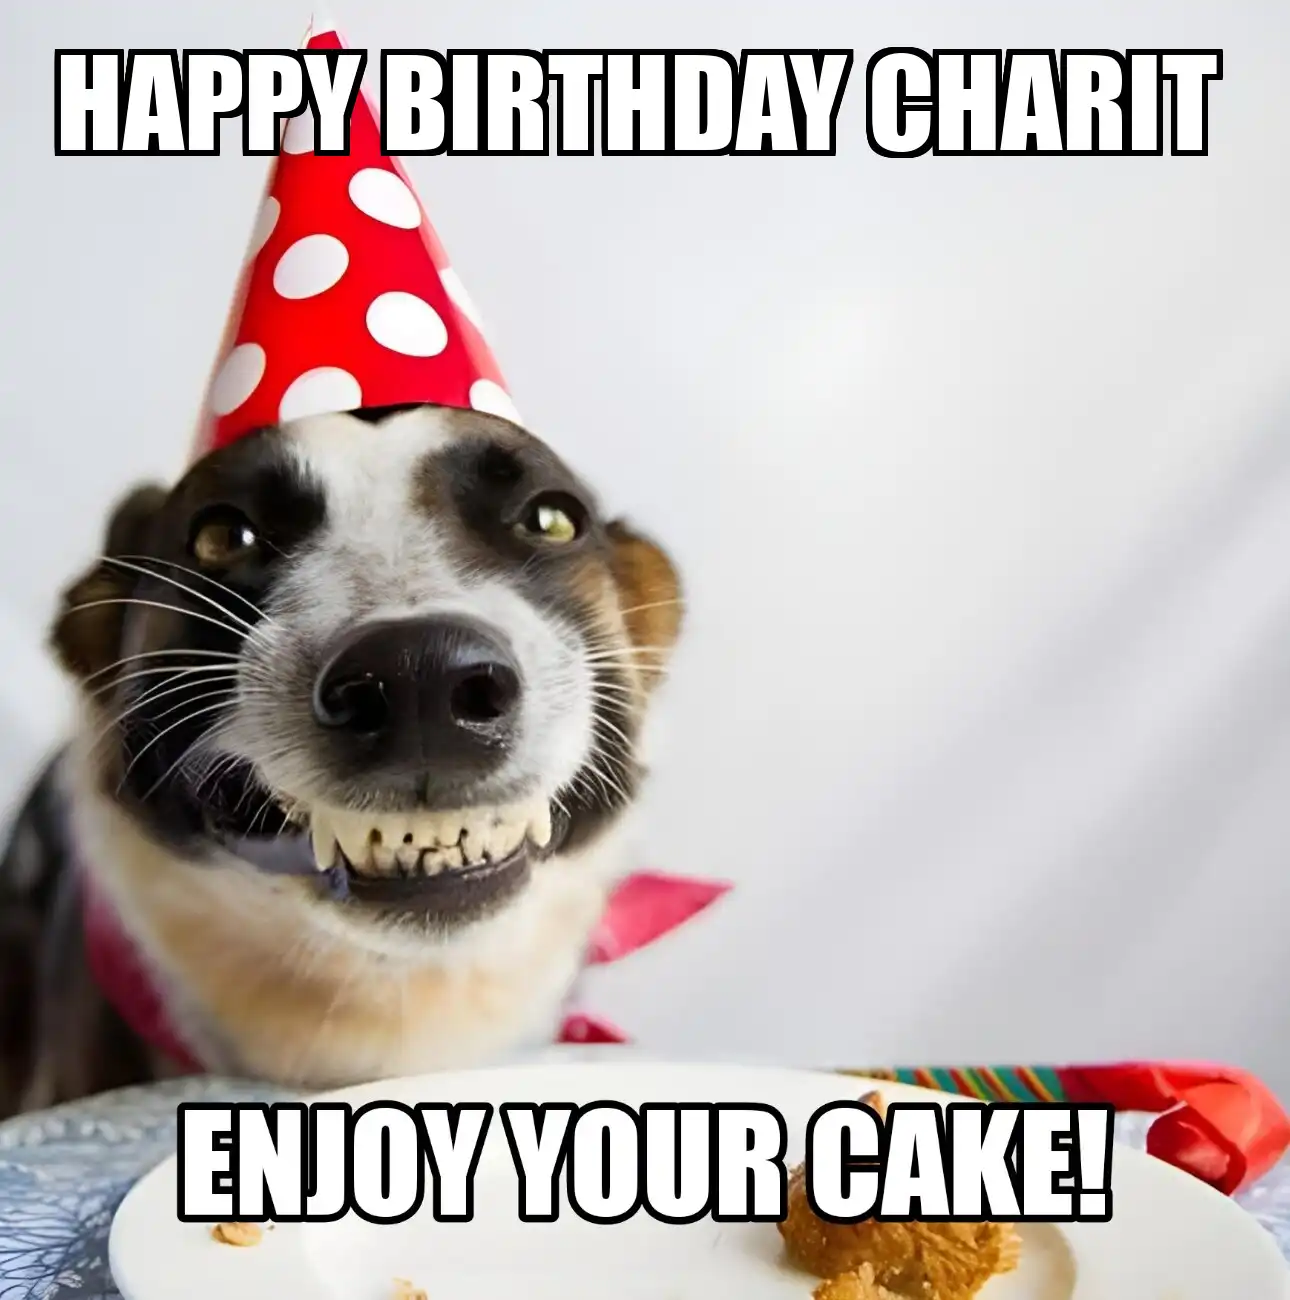 Happy Birthday Charit Enjoy Your Cake Dog Meme